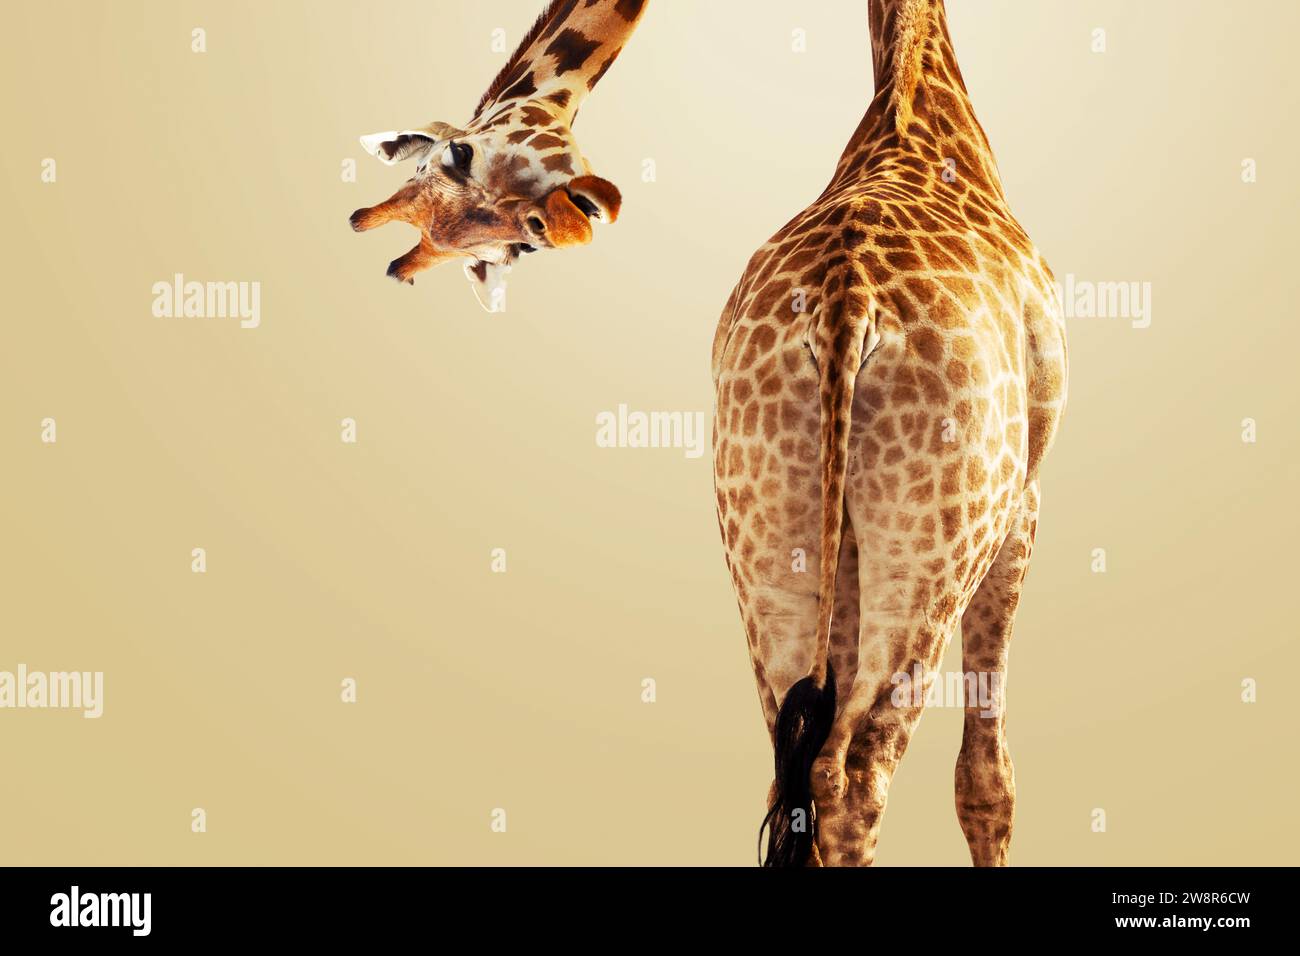 Giraffa creativa che guarda la fotocamera in basso su uno sfondo marrone, Vista posteriore. Idea creativa animale. Divertente Giraffa, concetto Foto Stock